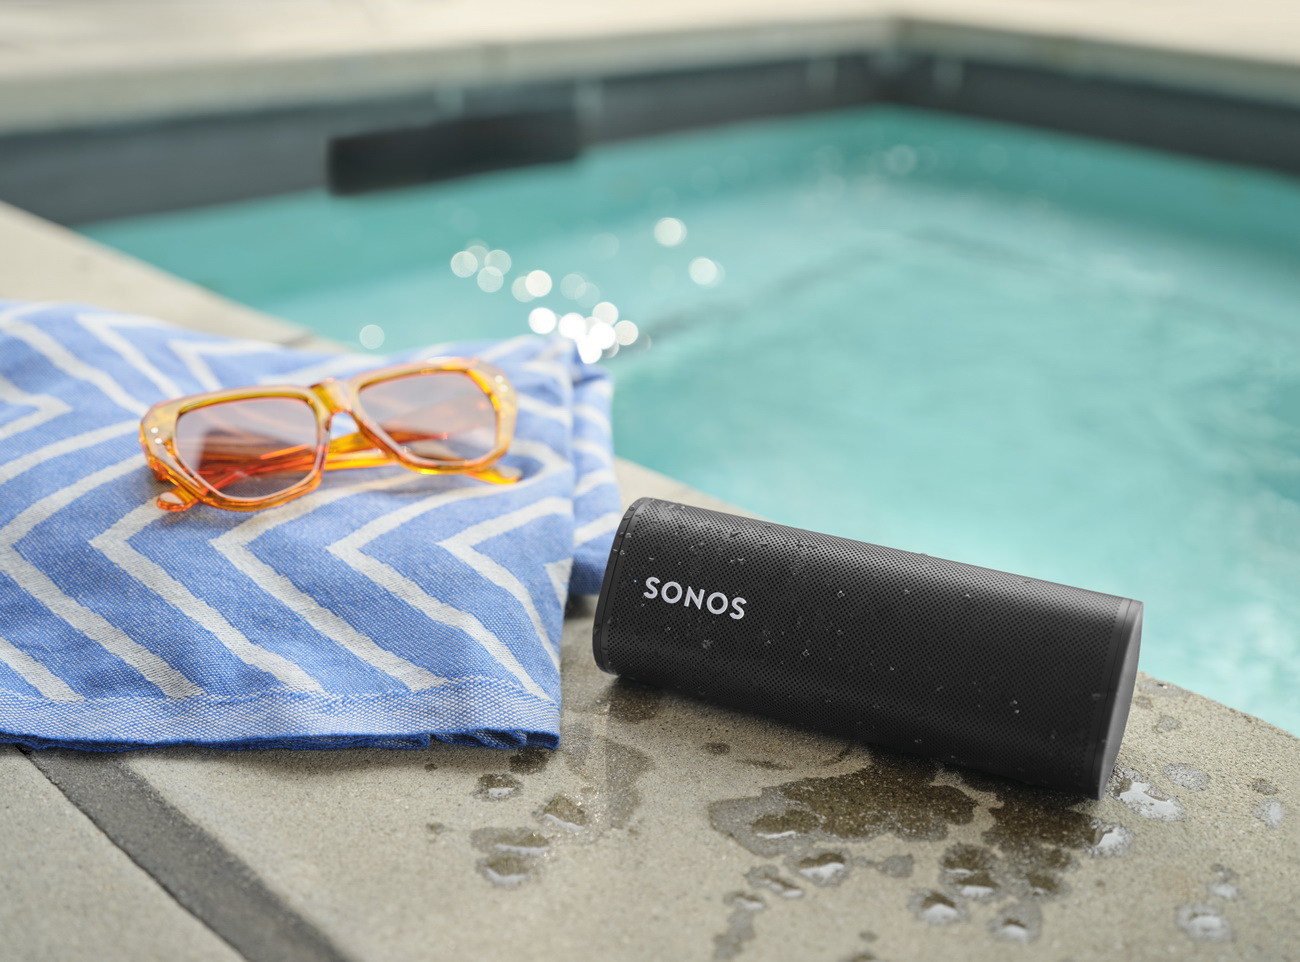 Αυτό το καλοκαίρι ο ήχος σου θα είναι προσφορά της Sonos